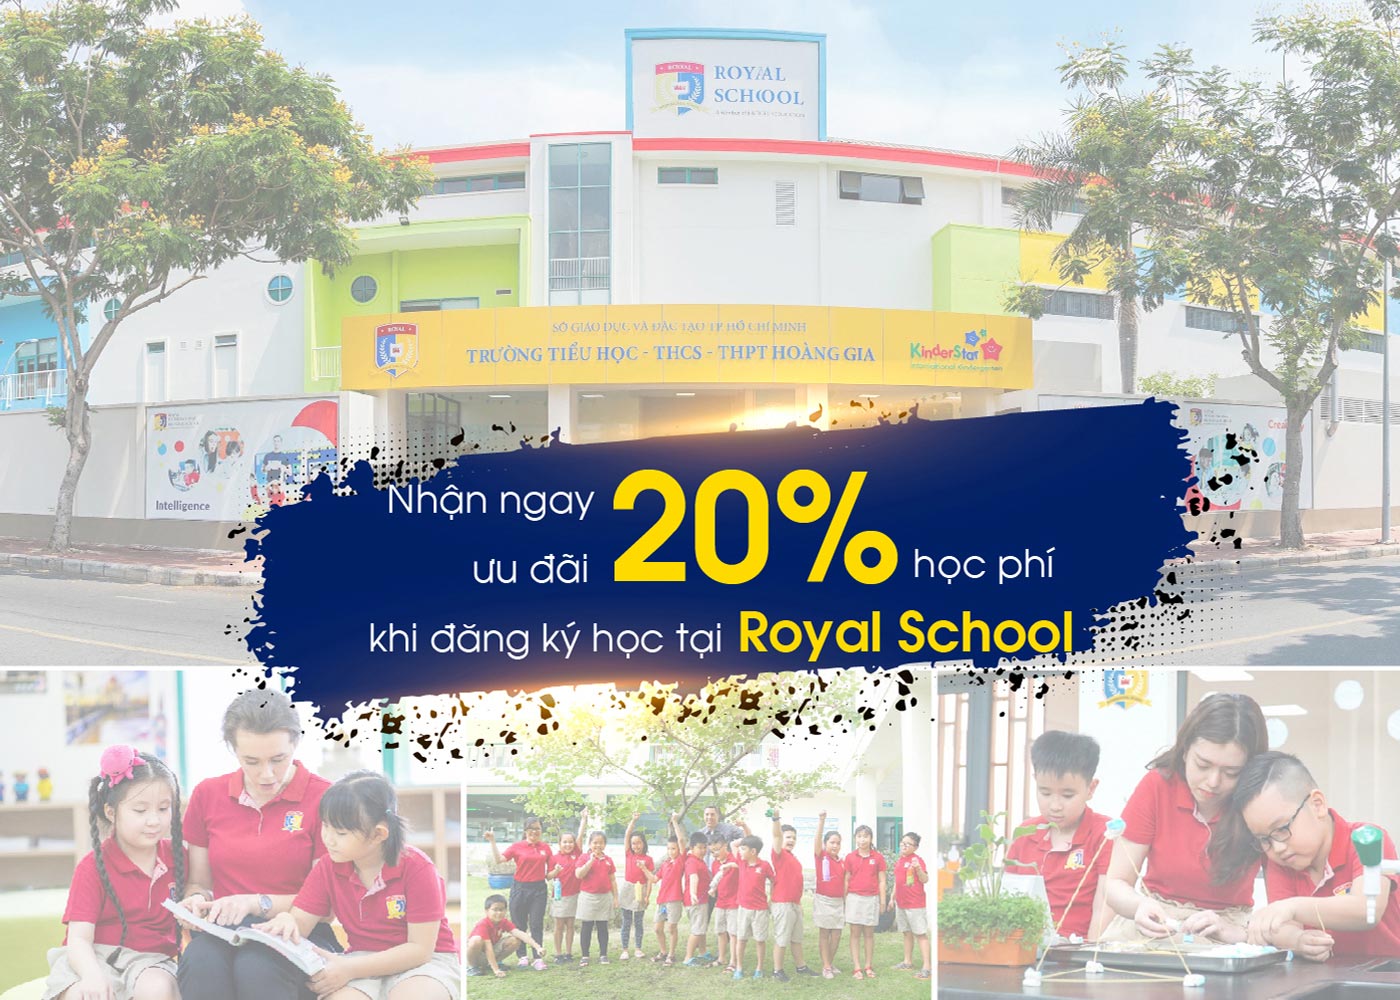 Nhận ngay ưu đãi 20% học phí khi đăng ký học tại Royal School - Ảnh 1